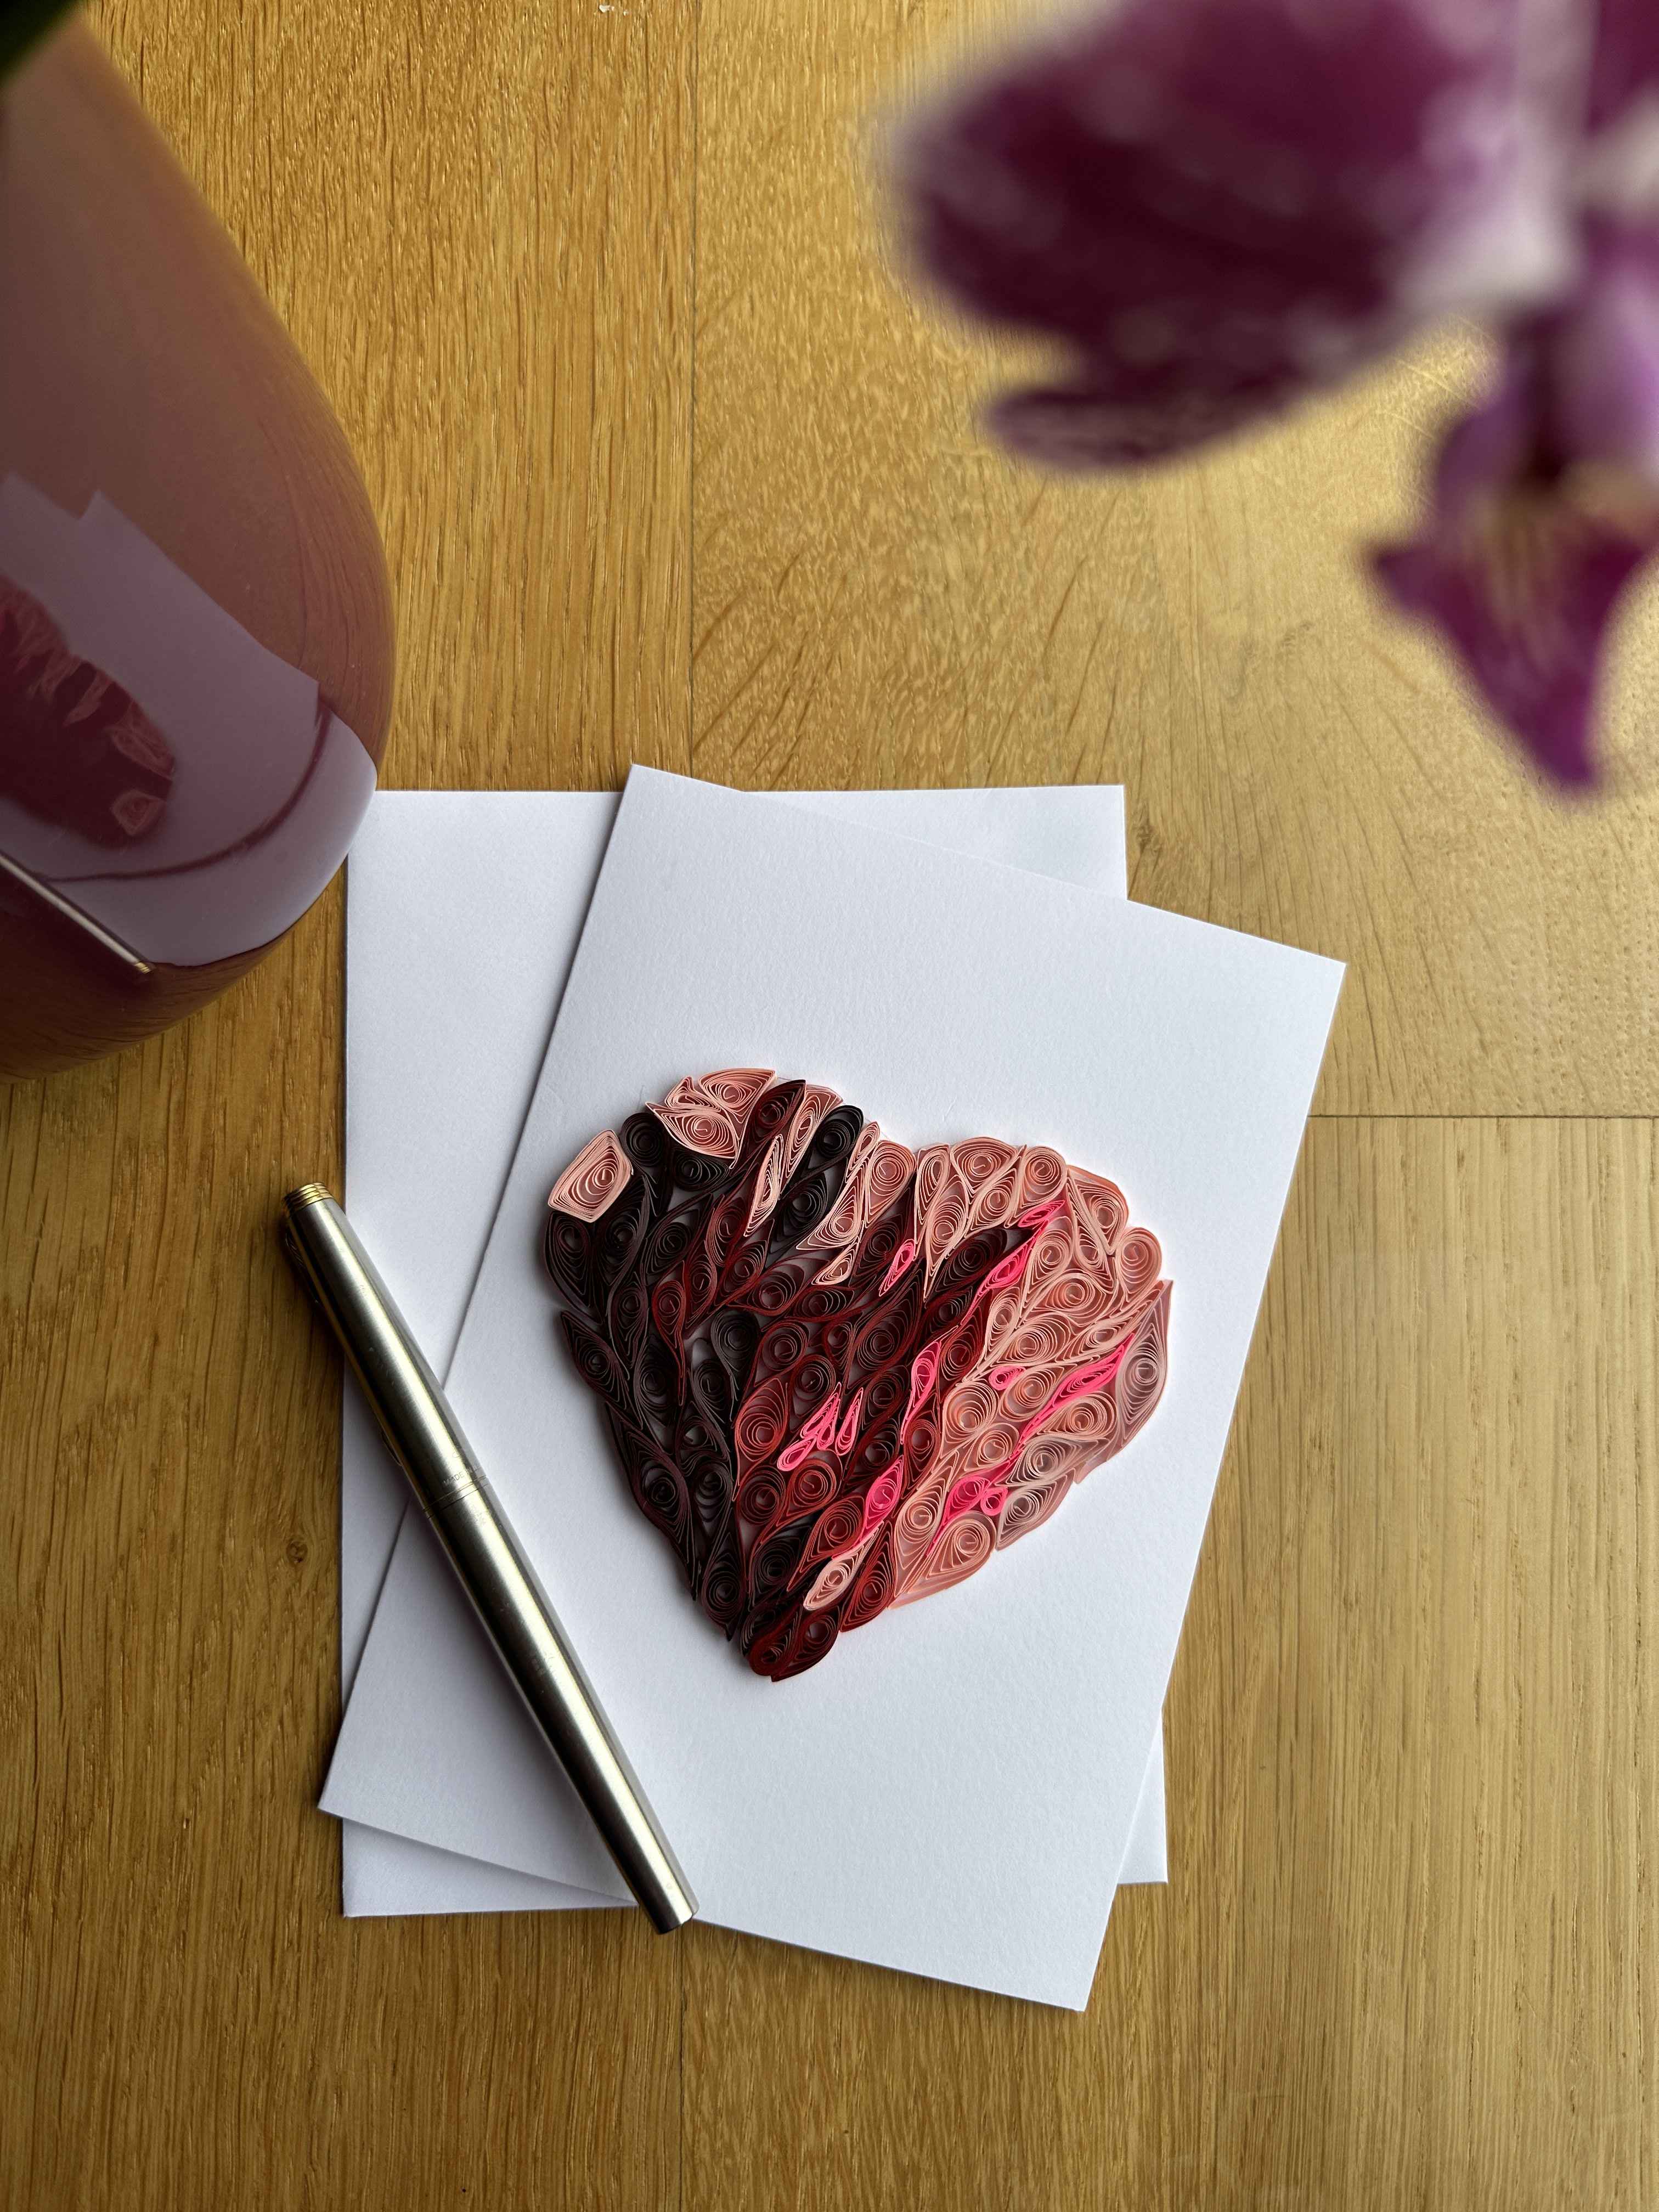 Handmade Quilled Valentine Heart Card - Heart Card - Valentine Card - 